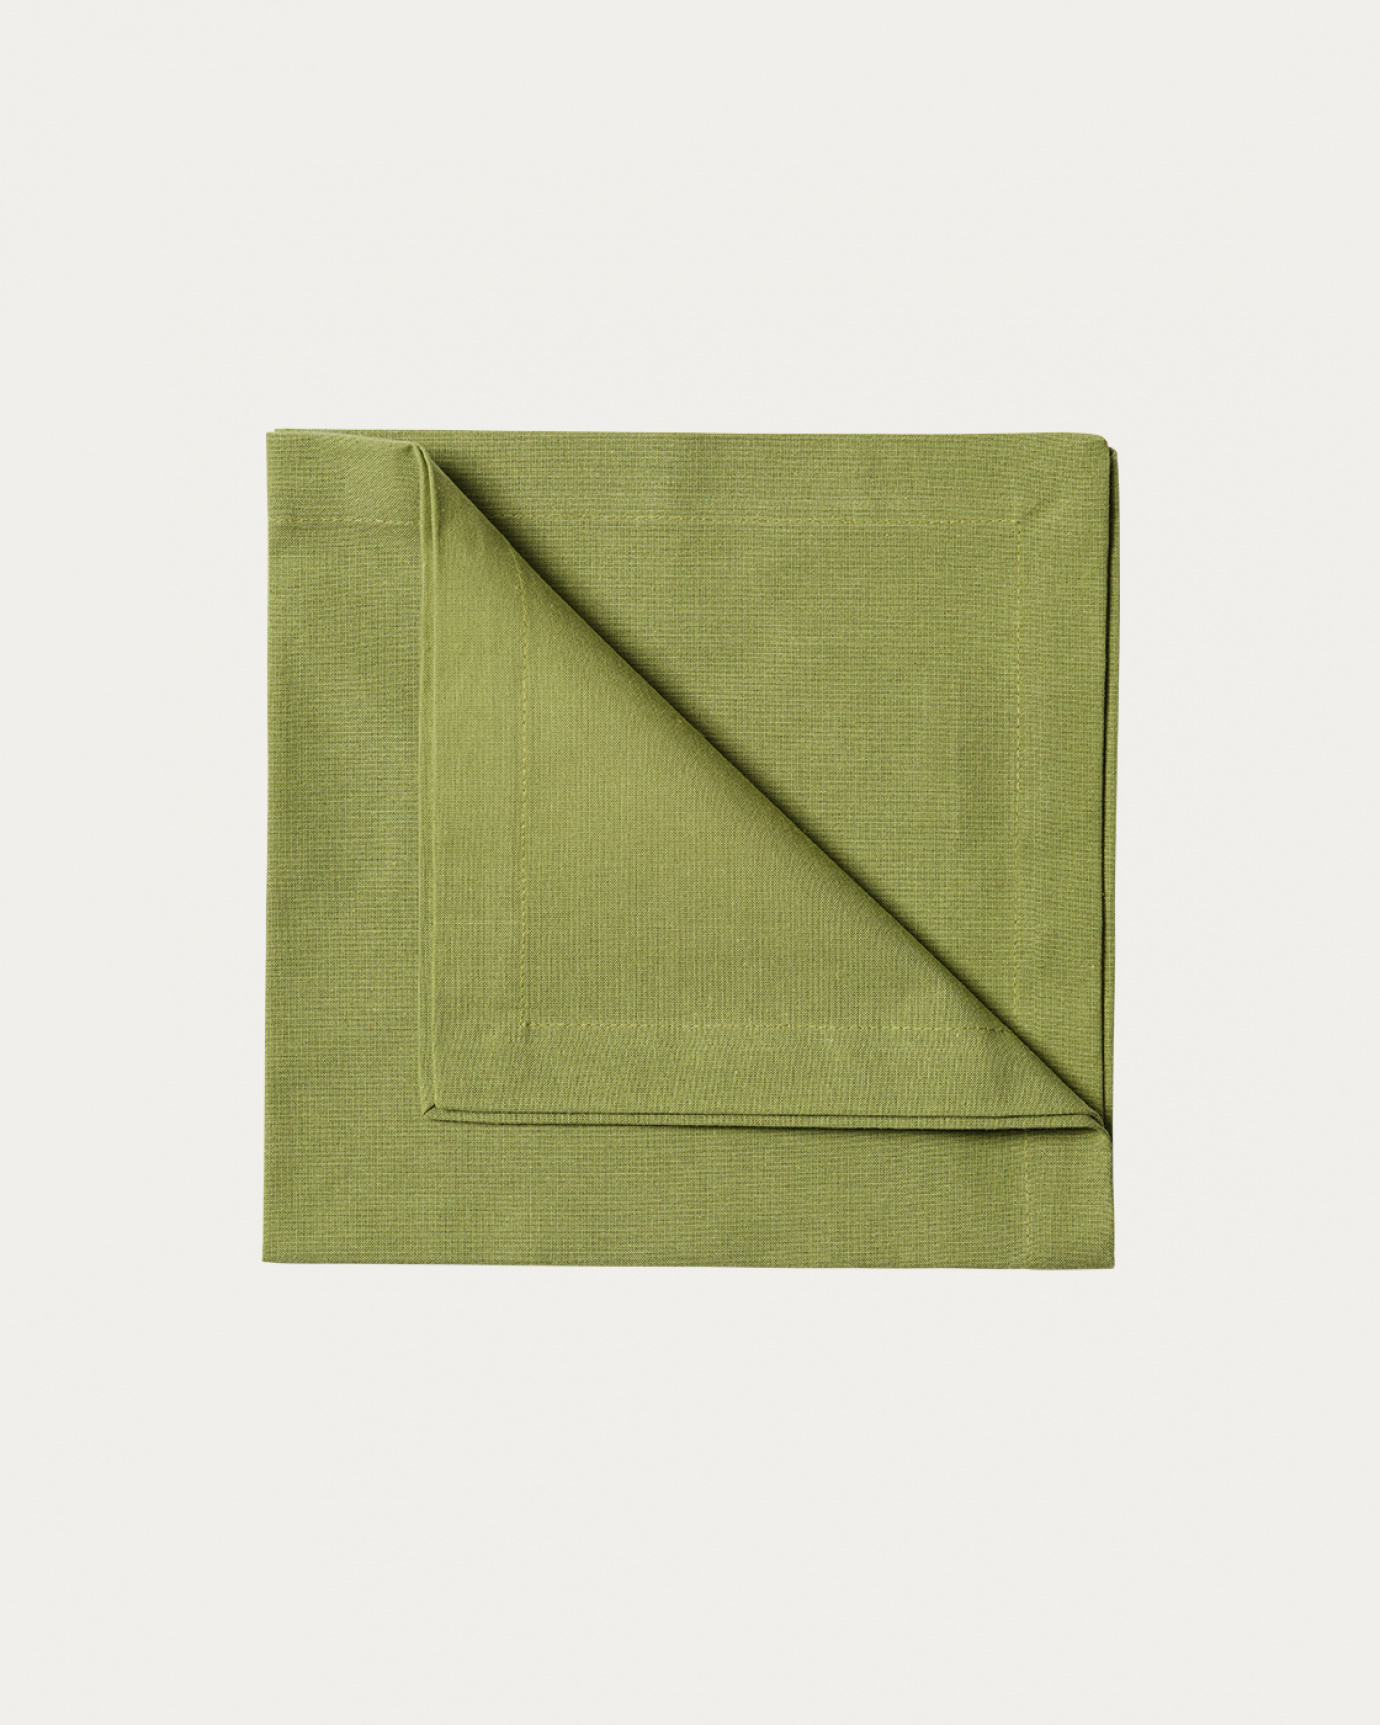 Produktbild moosgrün ROBERT Serviette aus weicher Baumwolle von LINUM DESIGN. Größe 45x45 cm und in 4er-Pack verkauft.